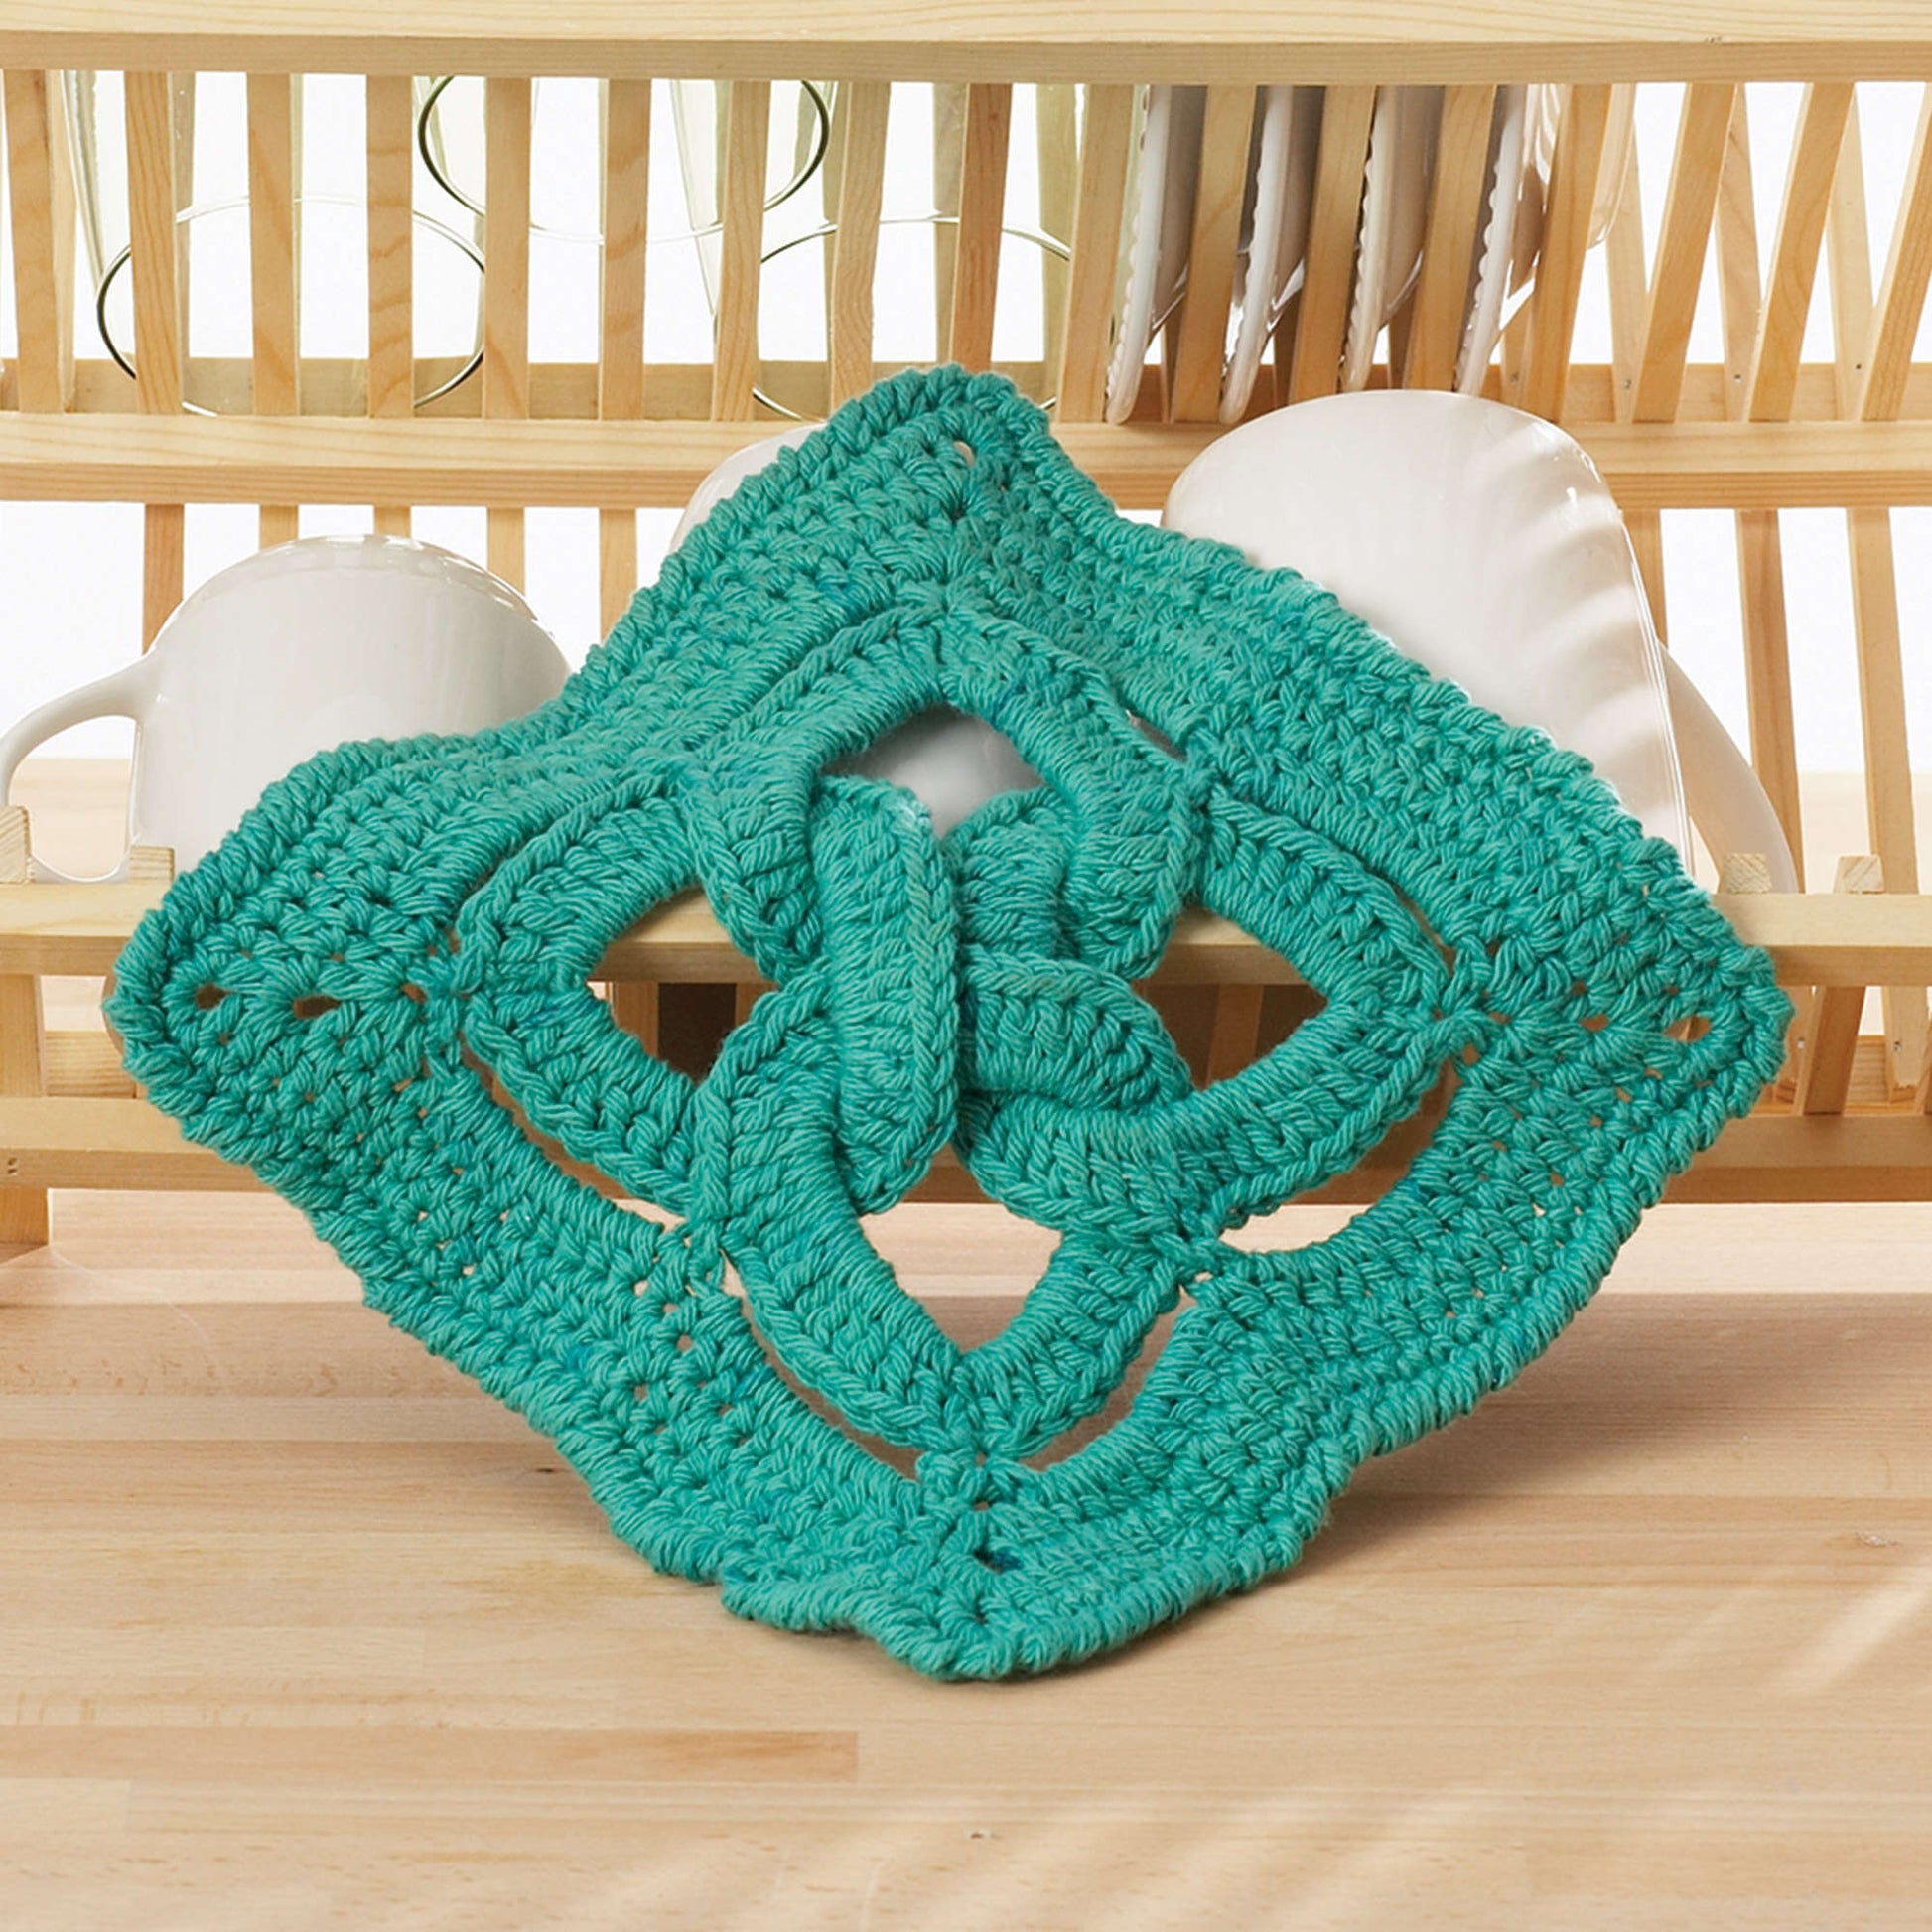 Mini Crochet Backpack - Celtic Knot Crochet